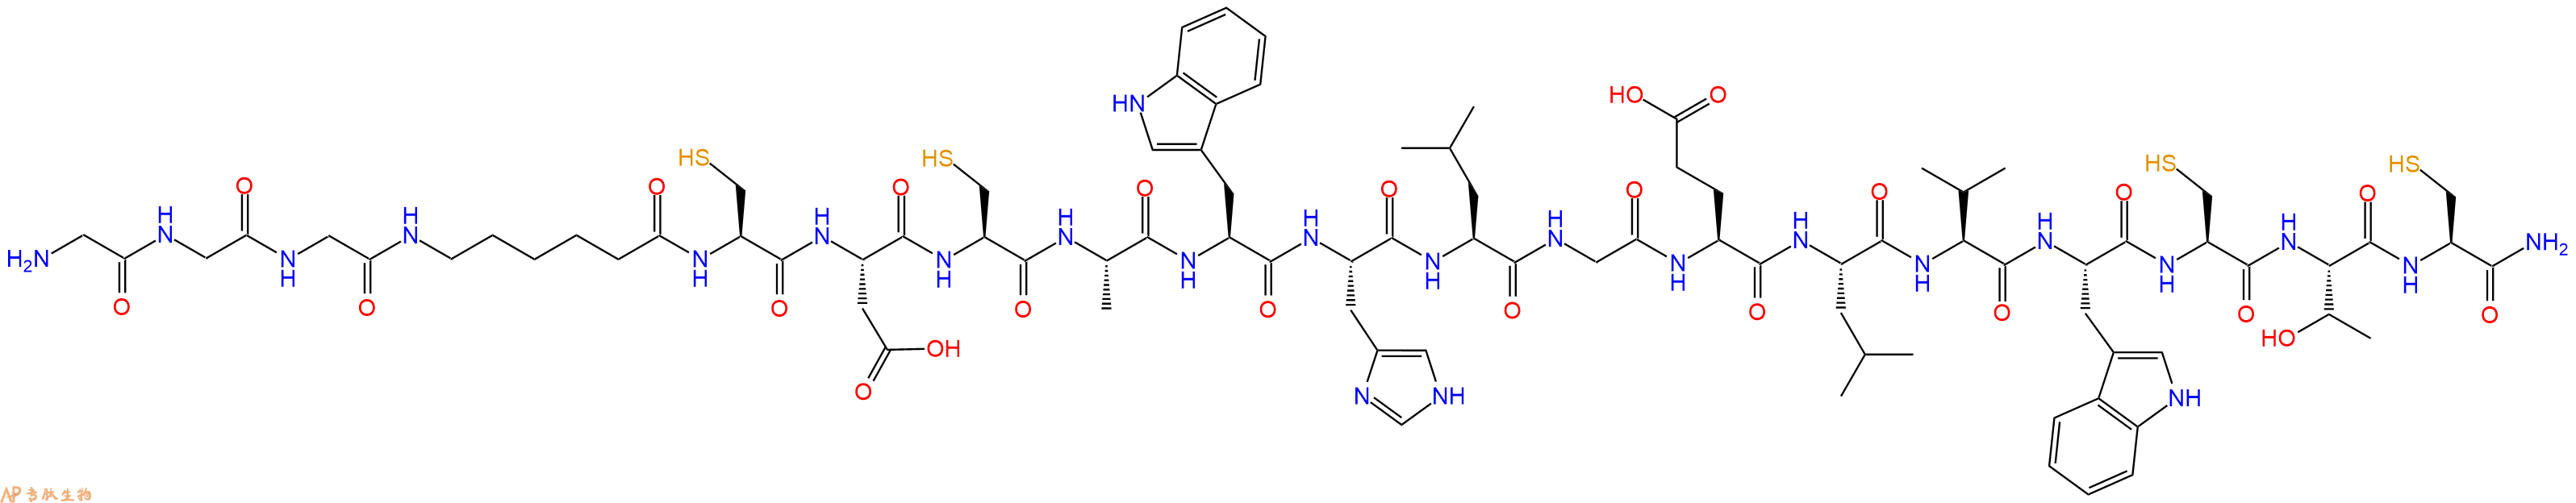 专肽生物产品H2N-Gly-Gly-Gly-Ahx-Cys-Asp-Cys-Ala-Trp-His-Leu-Gl